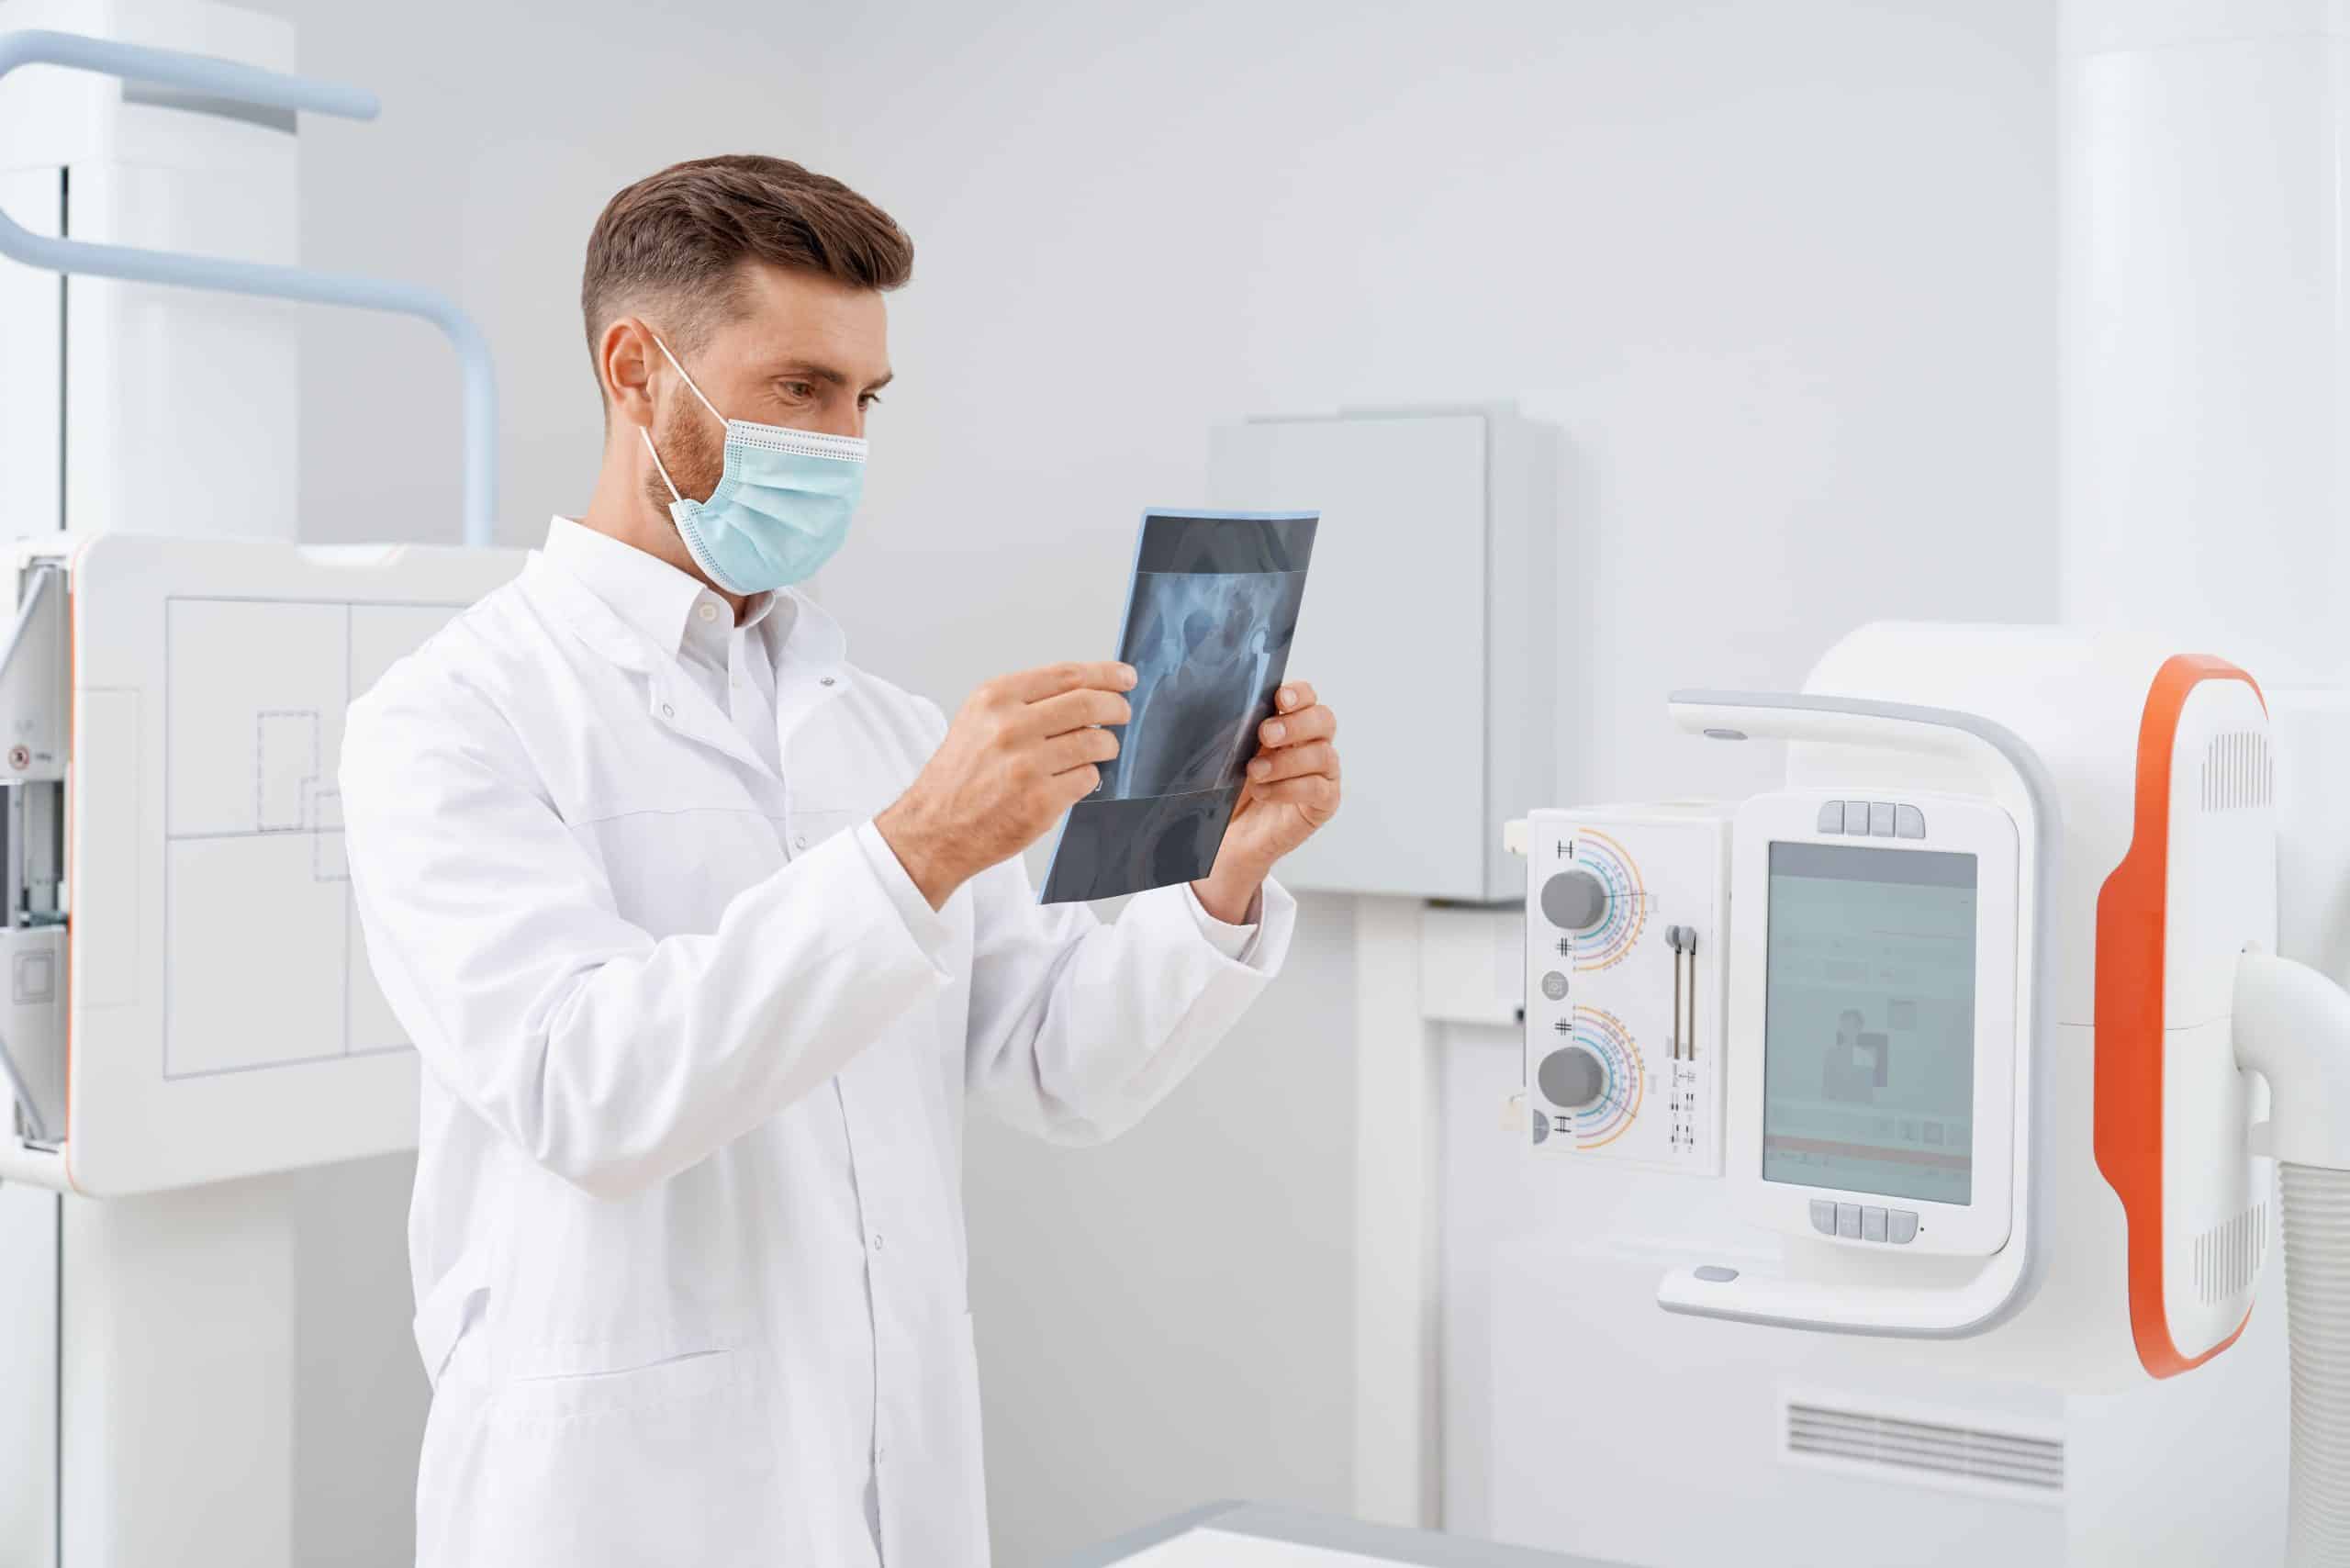 Imagen de un radiólogo observando una radiografía